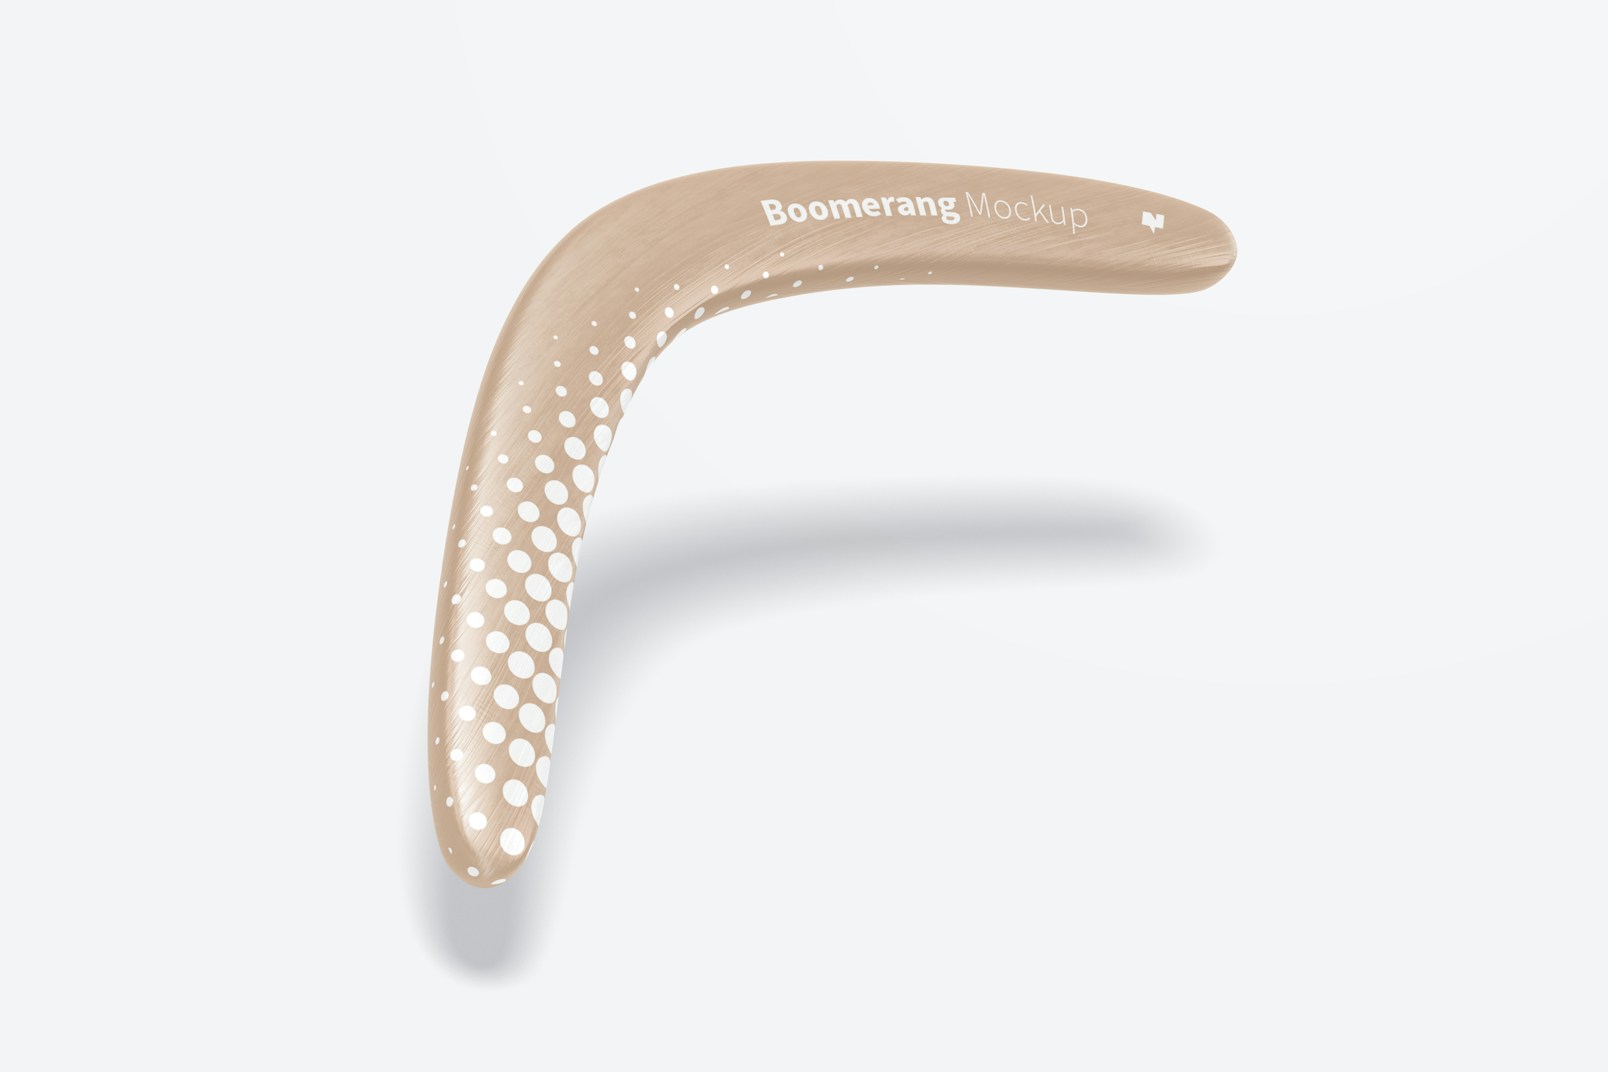 Maqueta de Boomerang, Flotando